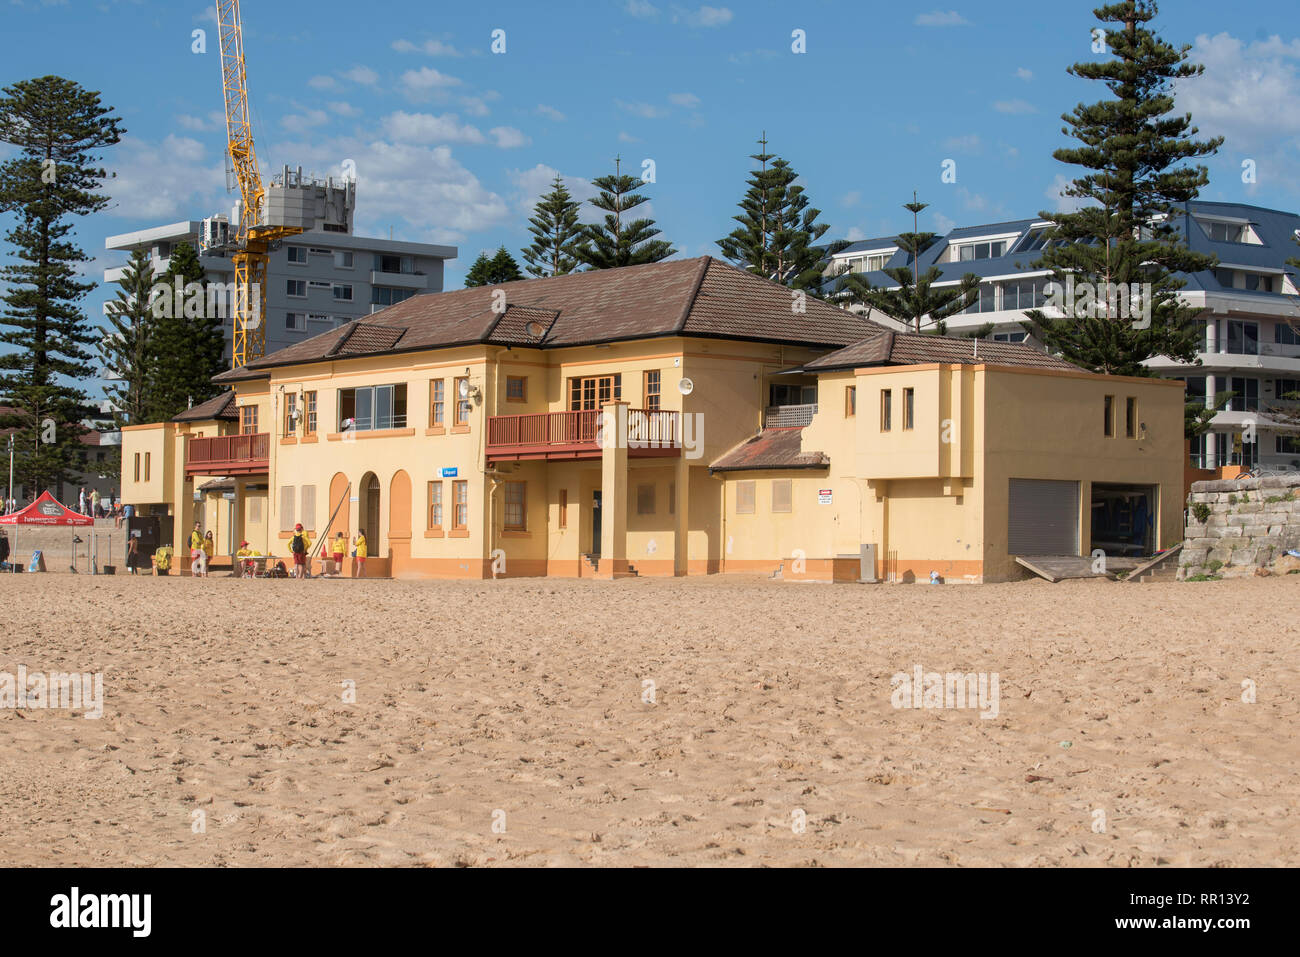 Le South Steyne surf club house et pins de Norfolk à Sydney Manly Beach, New South Wales, Australie Banque D'Images